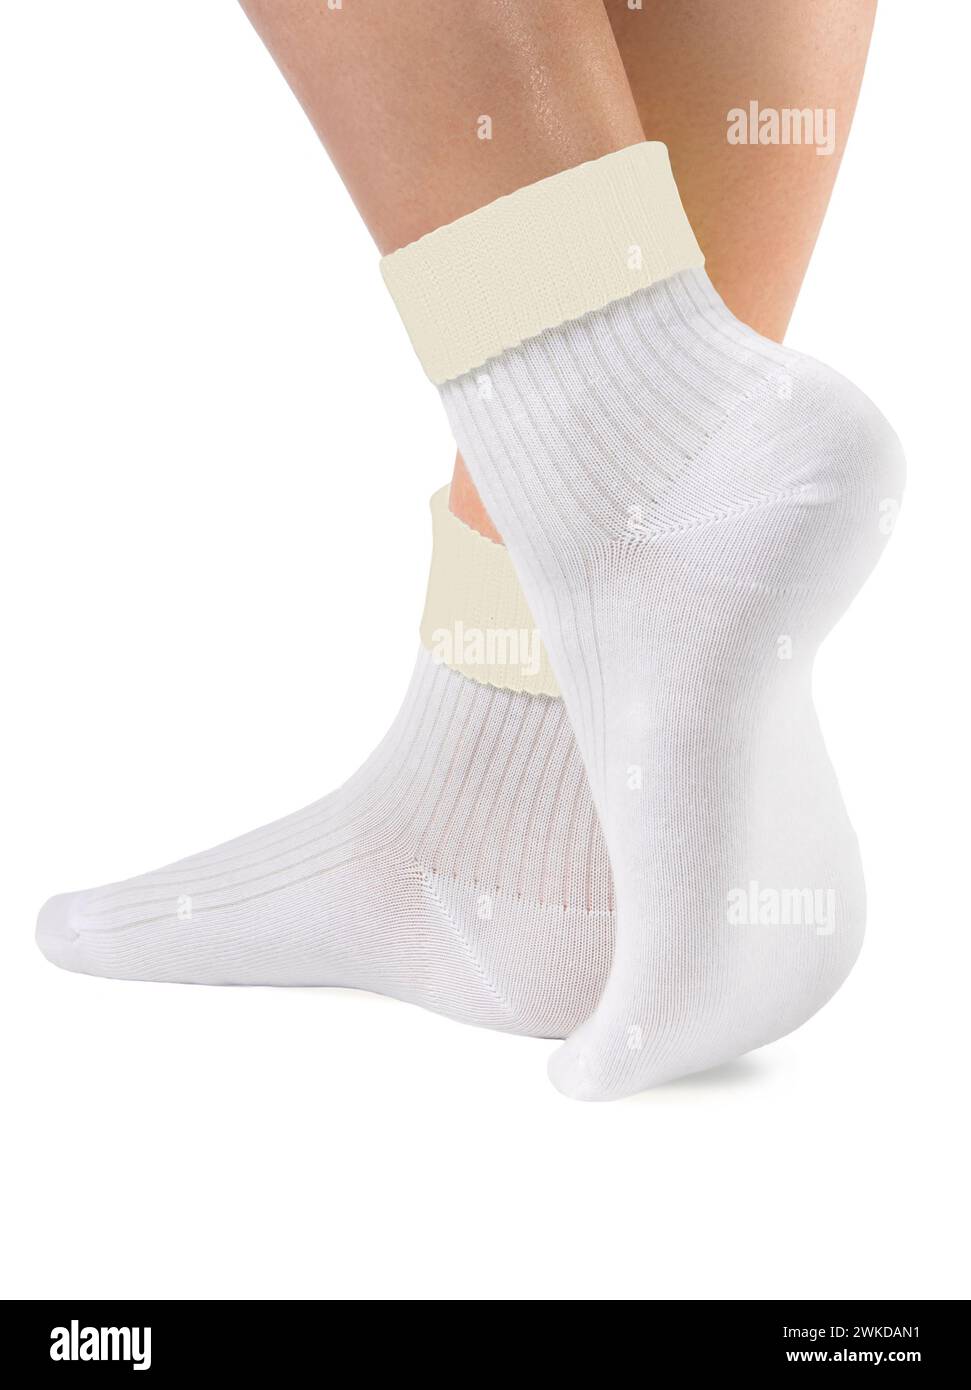 Vista laterale del bel piede di donna vestito con nuovi calzini bianchi bianchi bianchi in tessuto di cotone naturale con bordi gialli isolati su sfondo bianco Foto Stock